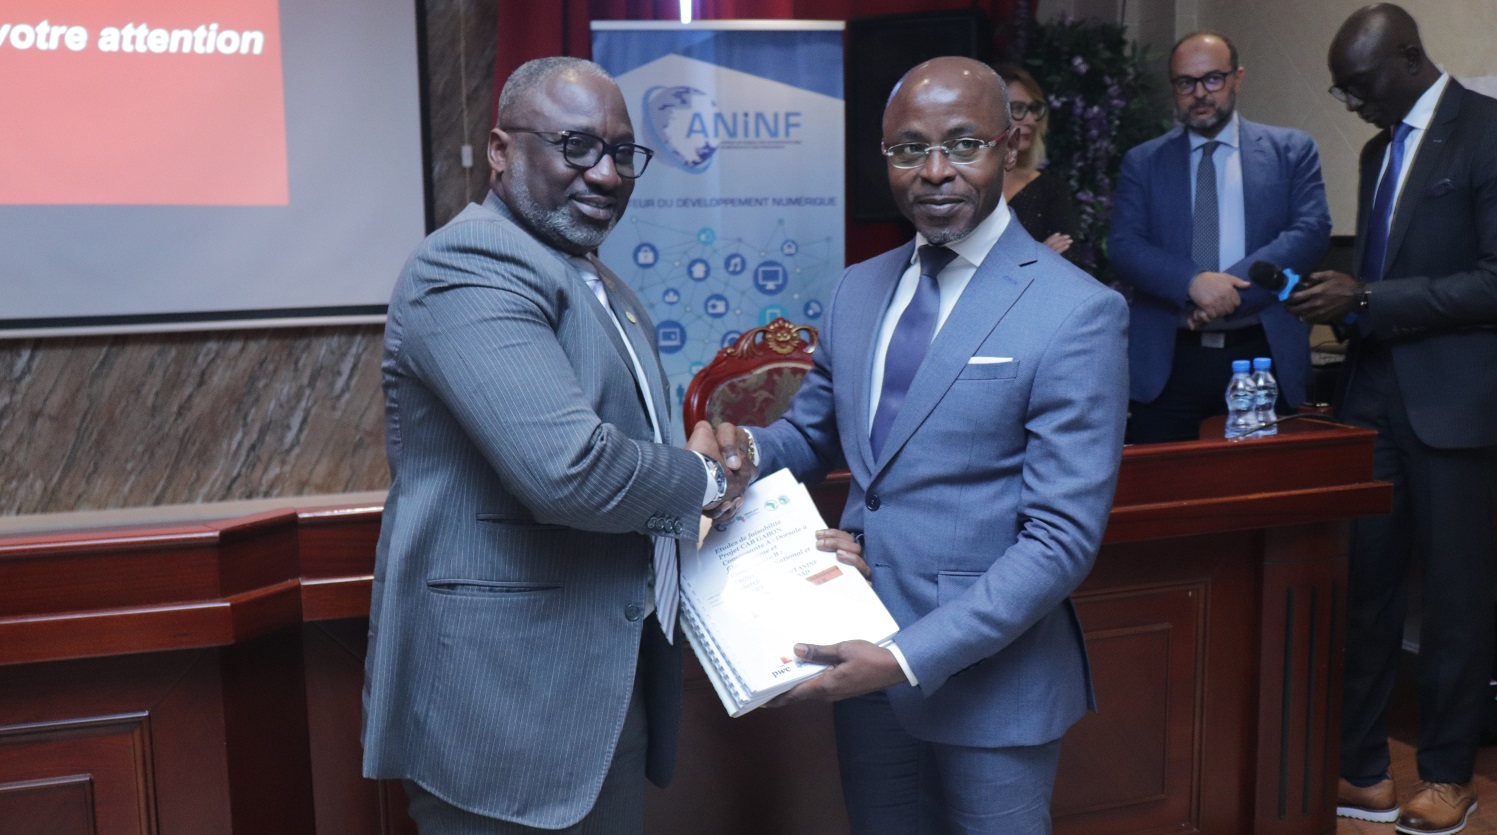 Alex Bernard Bongo Ondimba, le DG de l'ANINF, reçoit les études de PricewaterhouseCoopers.